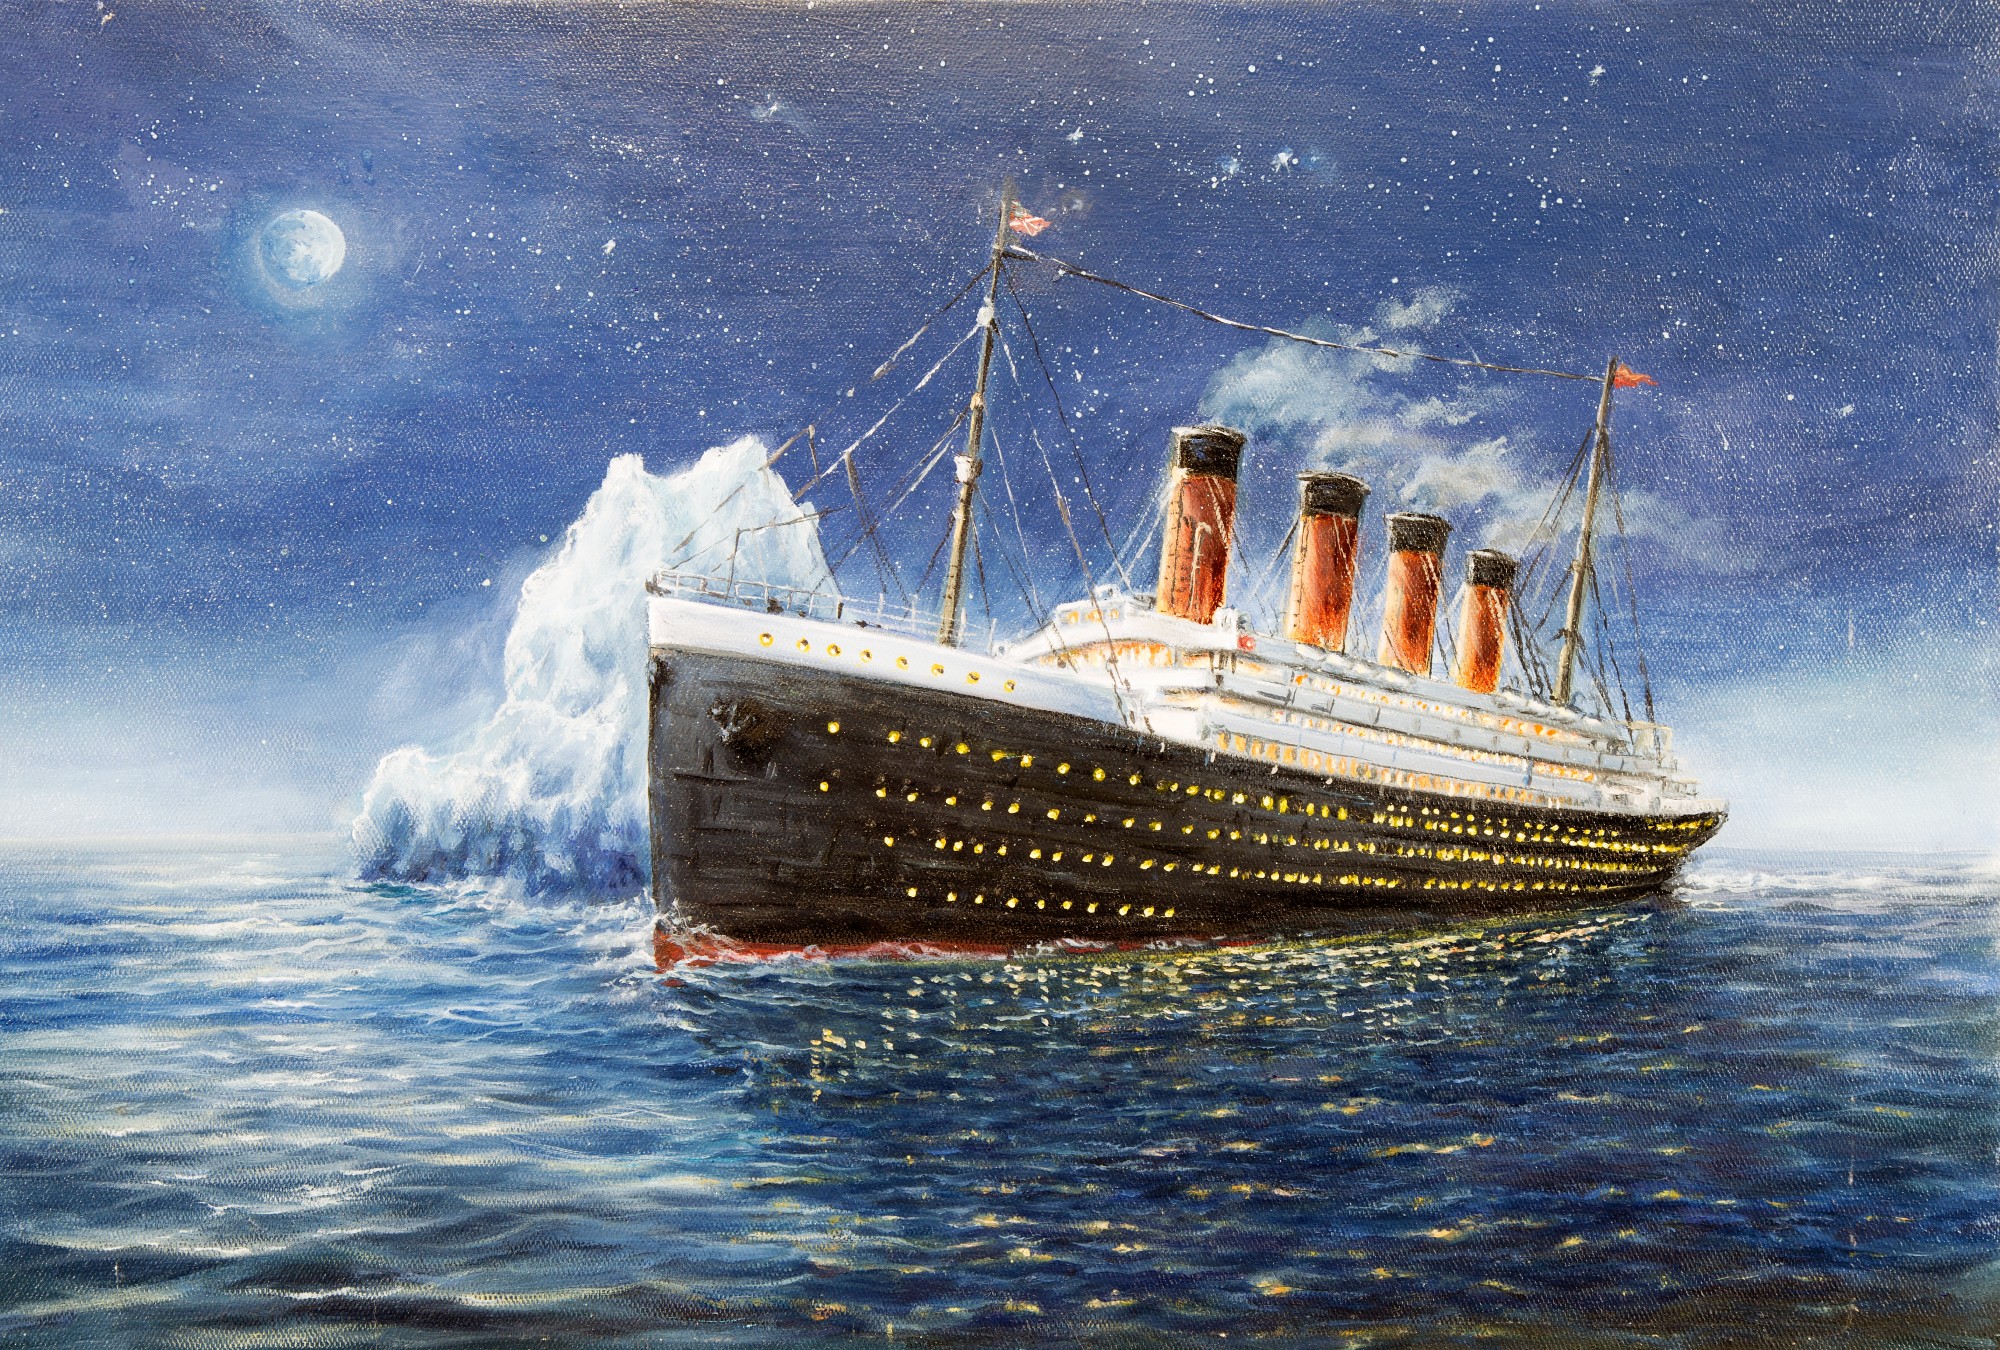 La tragedia del Titanic tiene grandes enseñanzas.